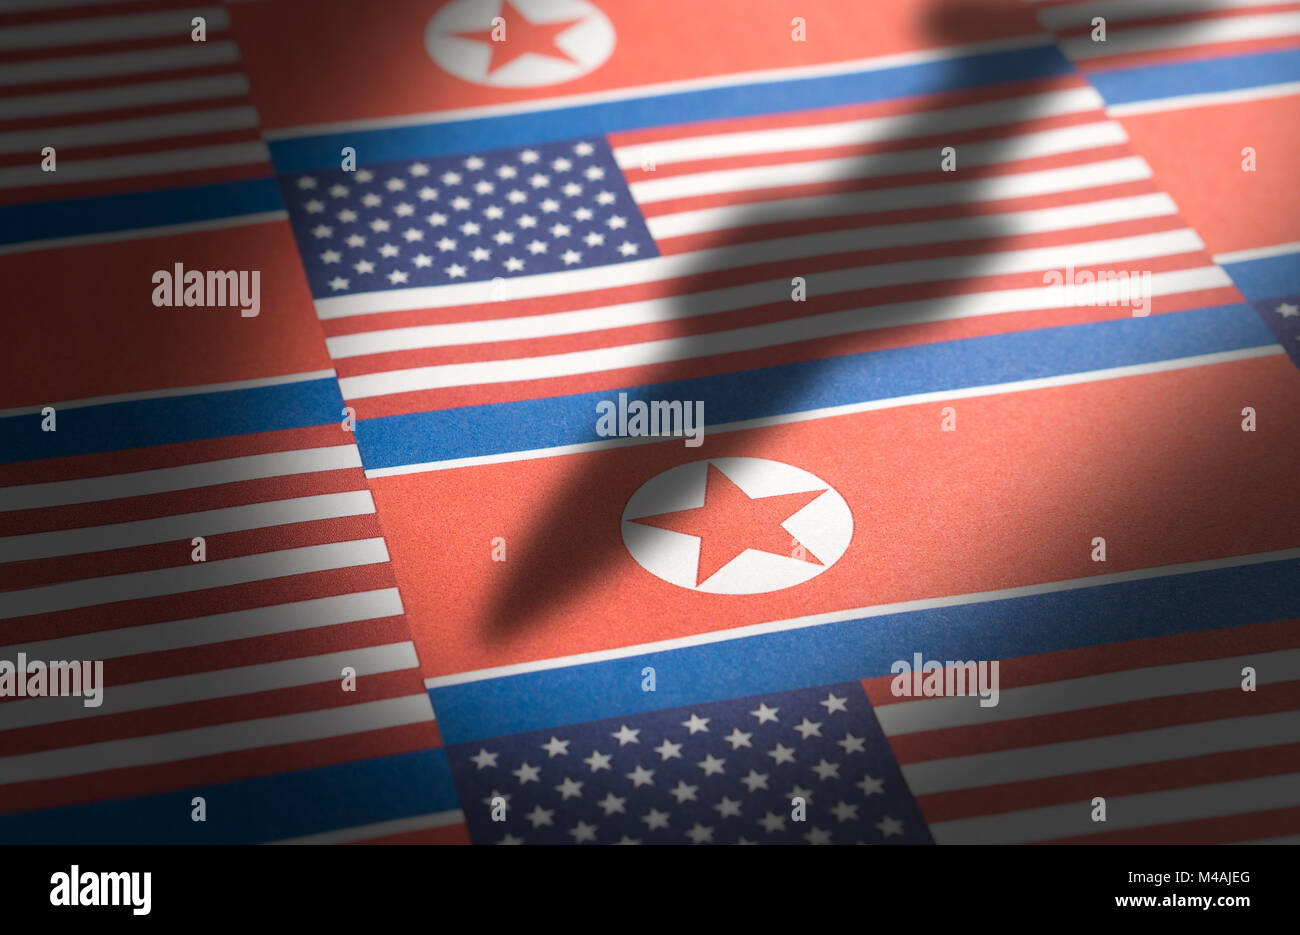 Bandiera della Corea del Nord e gli Stati Uniti d'America (USA) con un'ombra da un missile balistico. Foto Stock